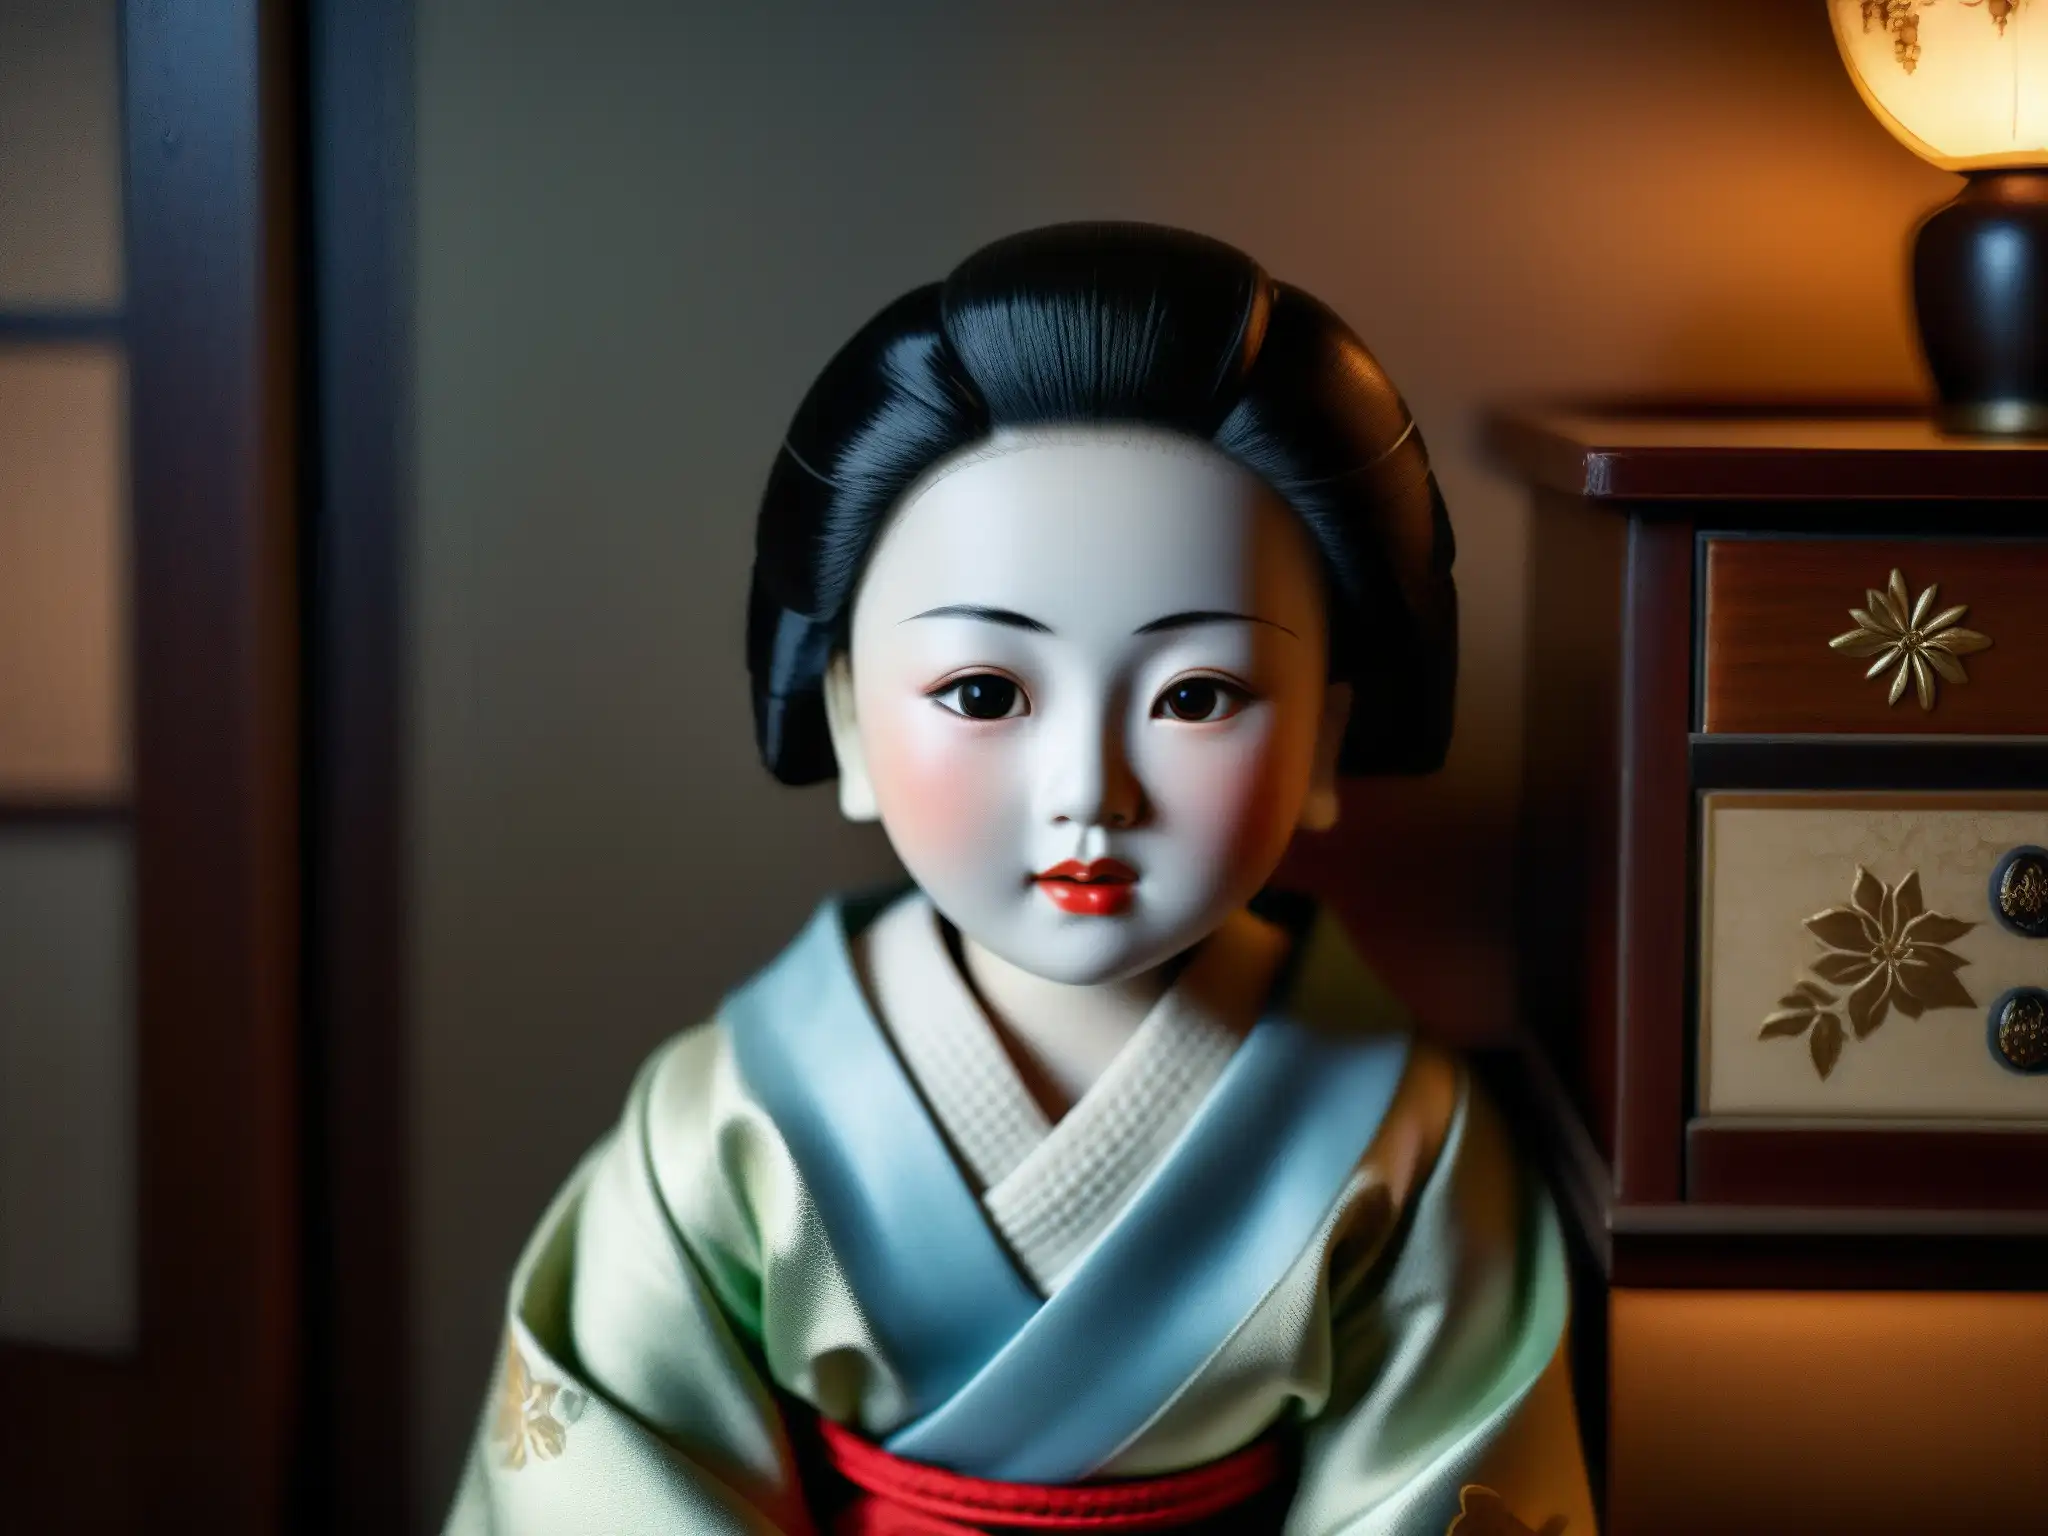 Una muñeca japonesa tradicional con porcelana agrietada, en una habitación lúgubre